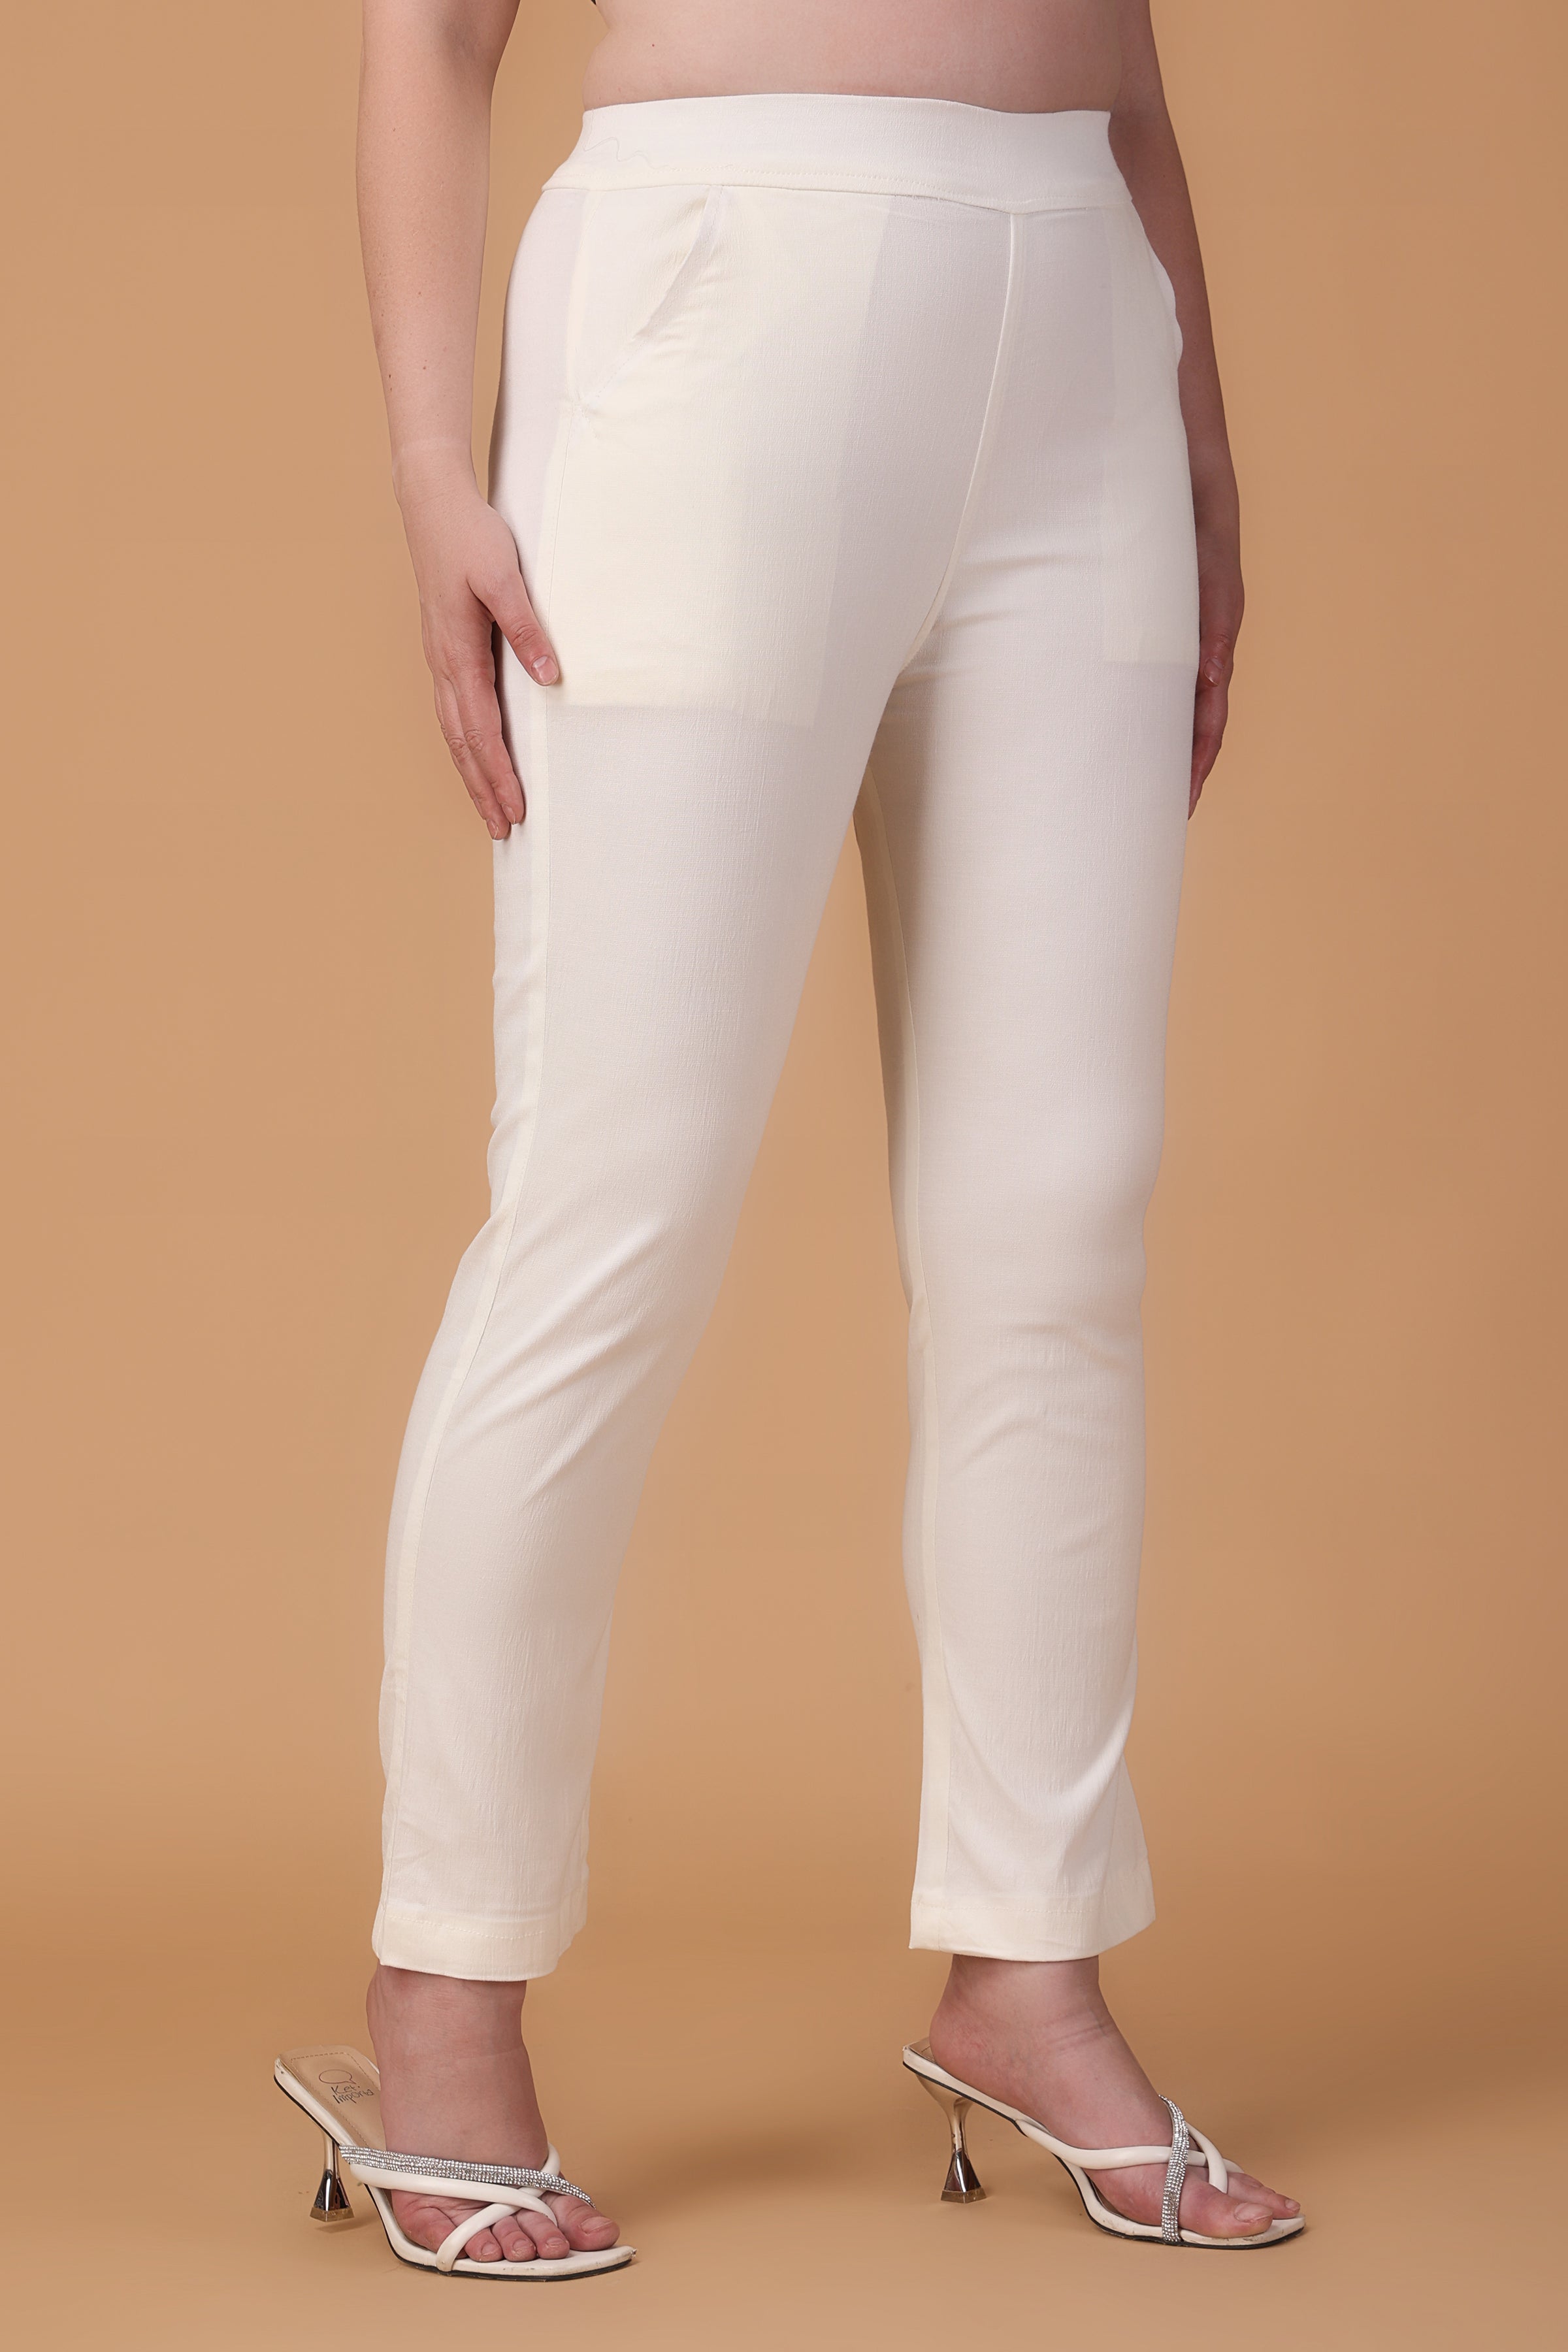 Women's White Pants | lululemon